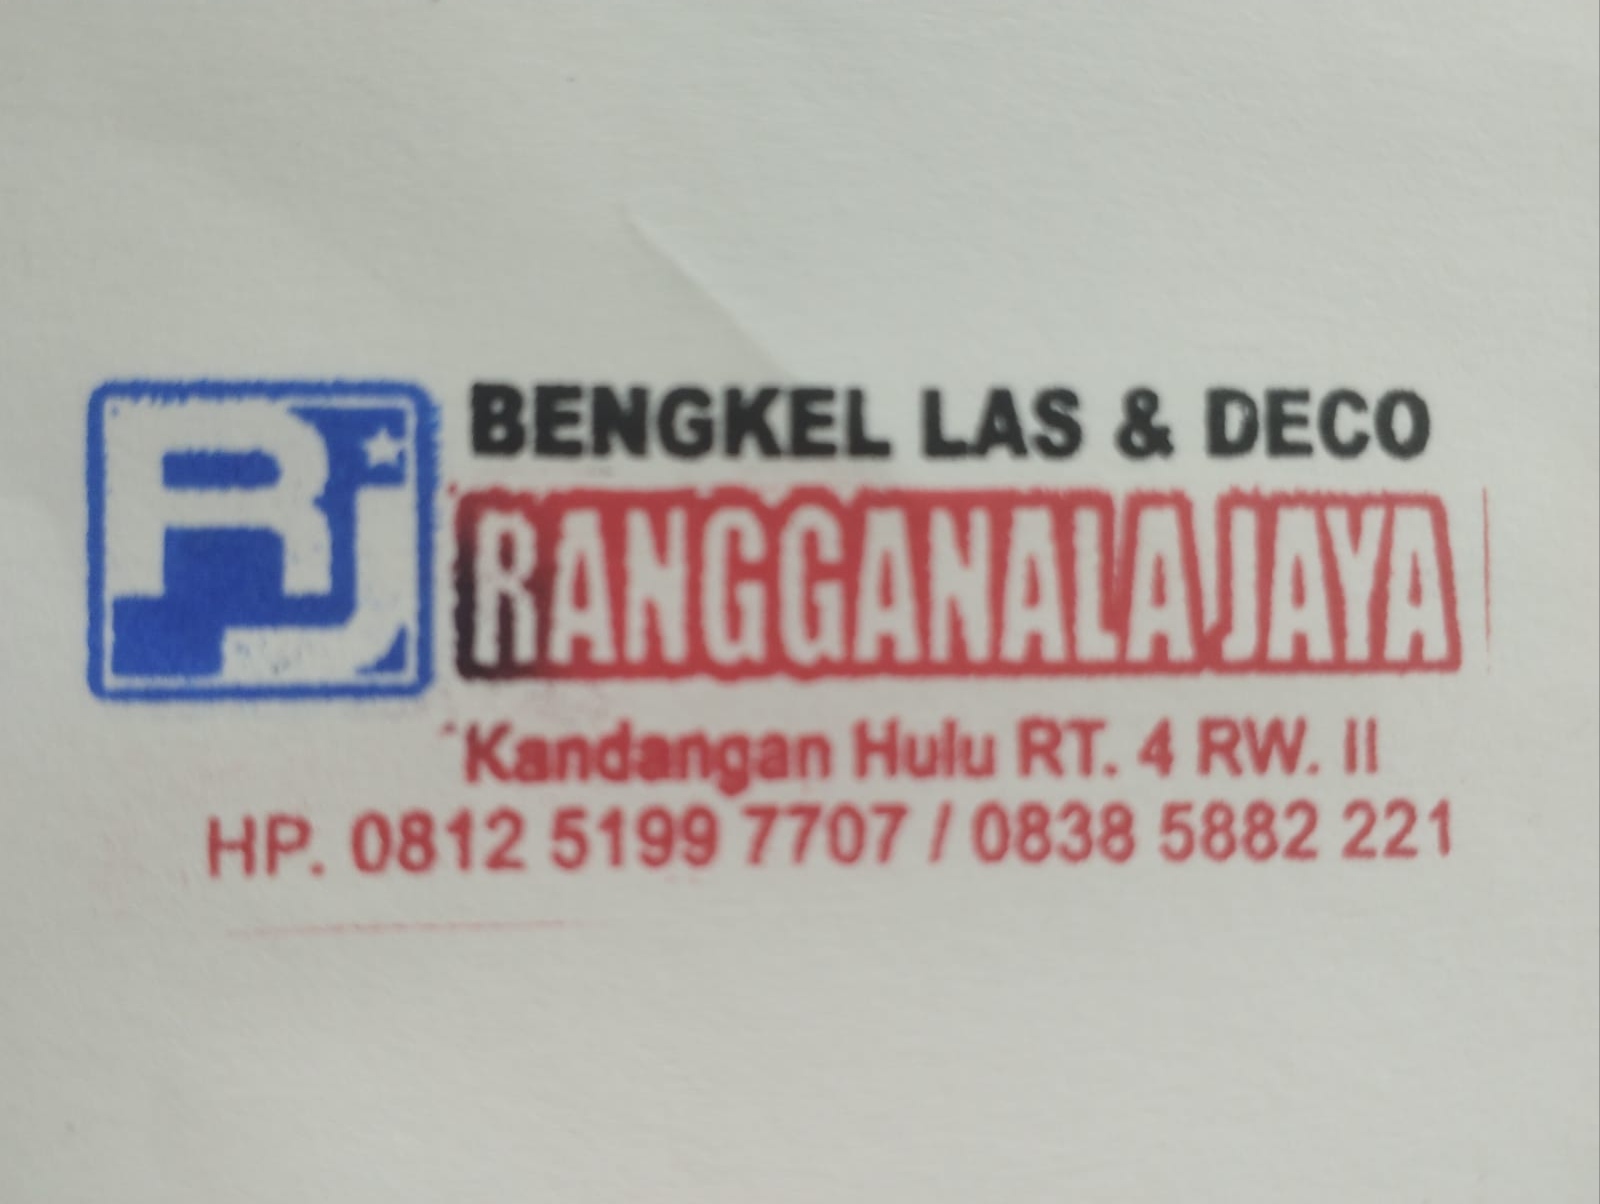 Bengkel Las & Deco Rangganala Jaya